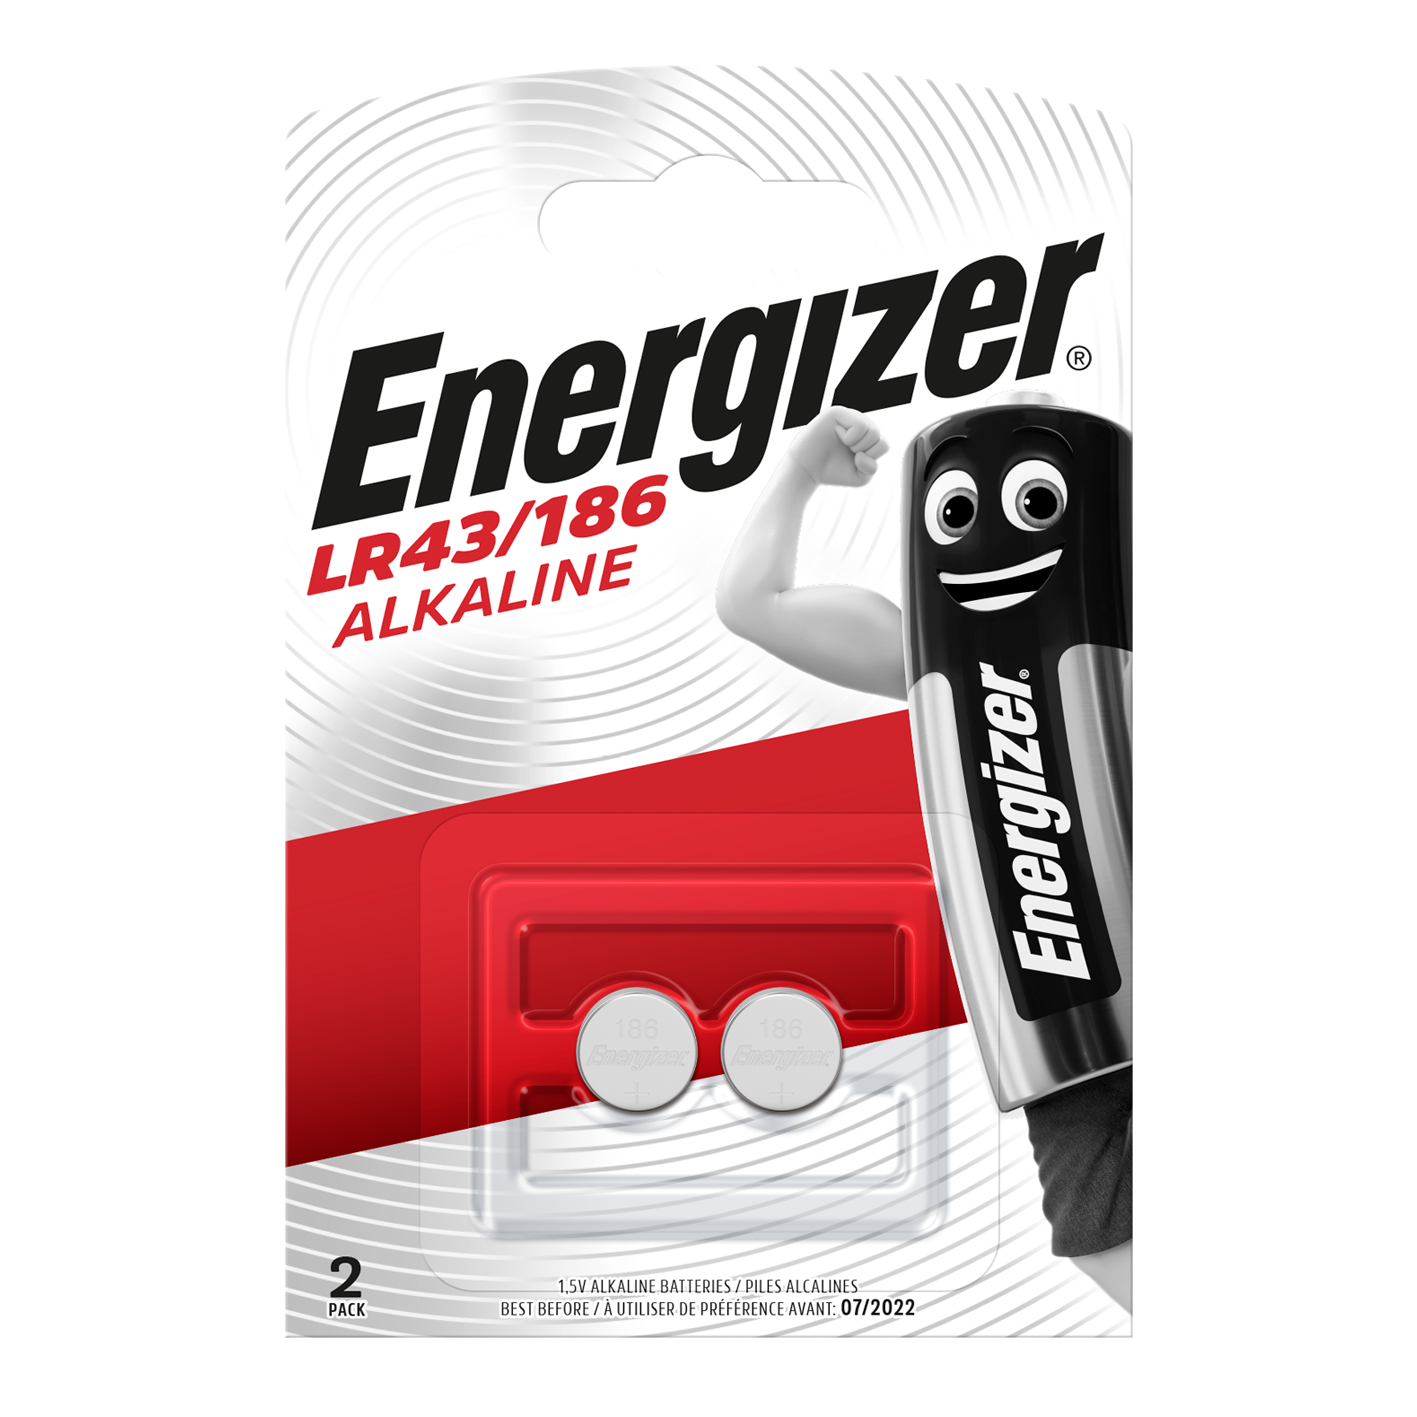 Energizer LR43/186 pila alcalina tipo botón, paquete de 2